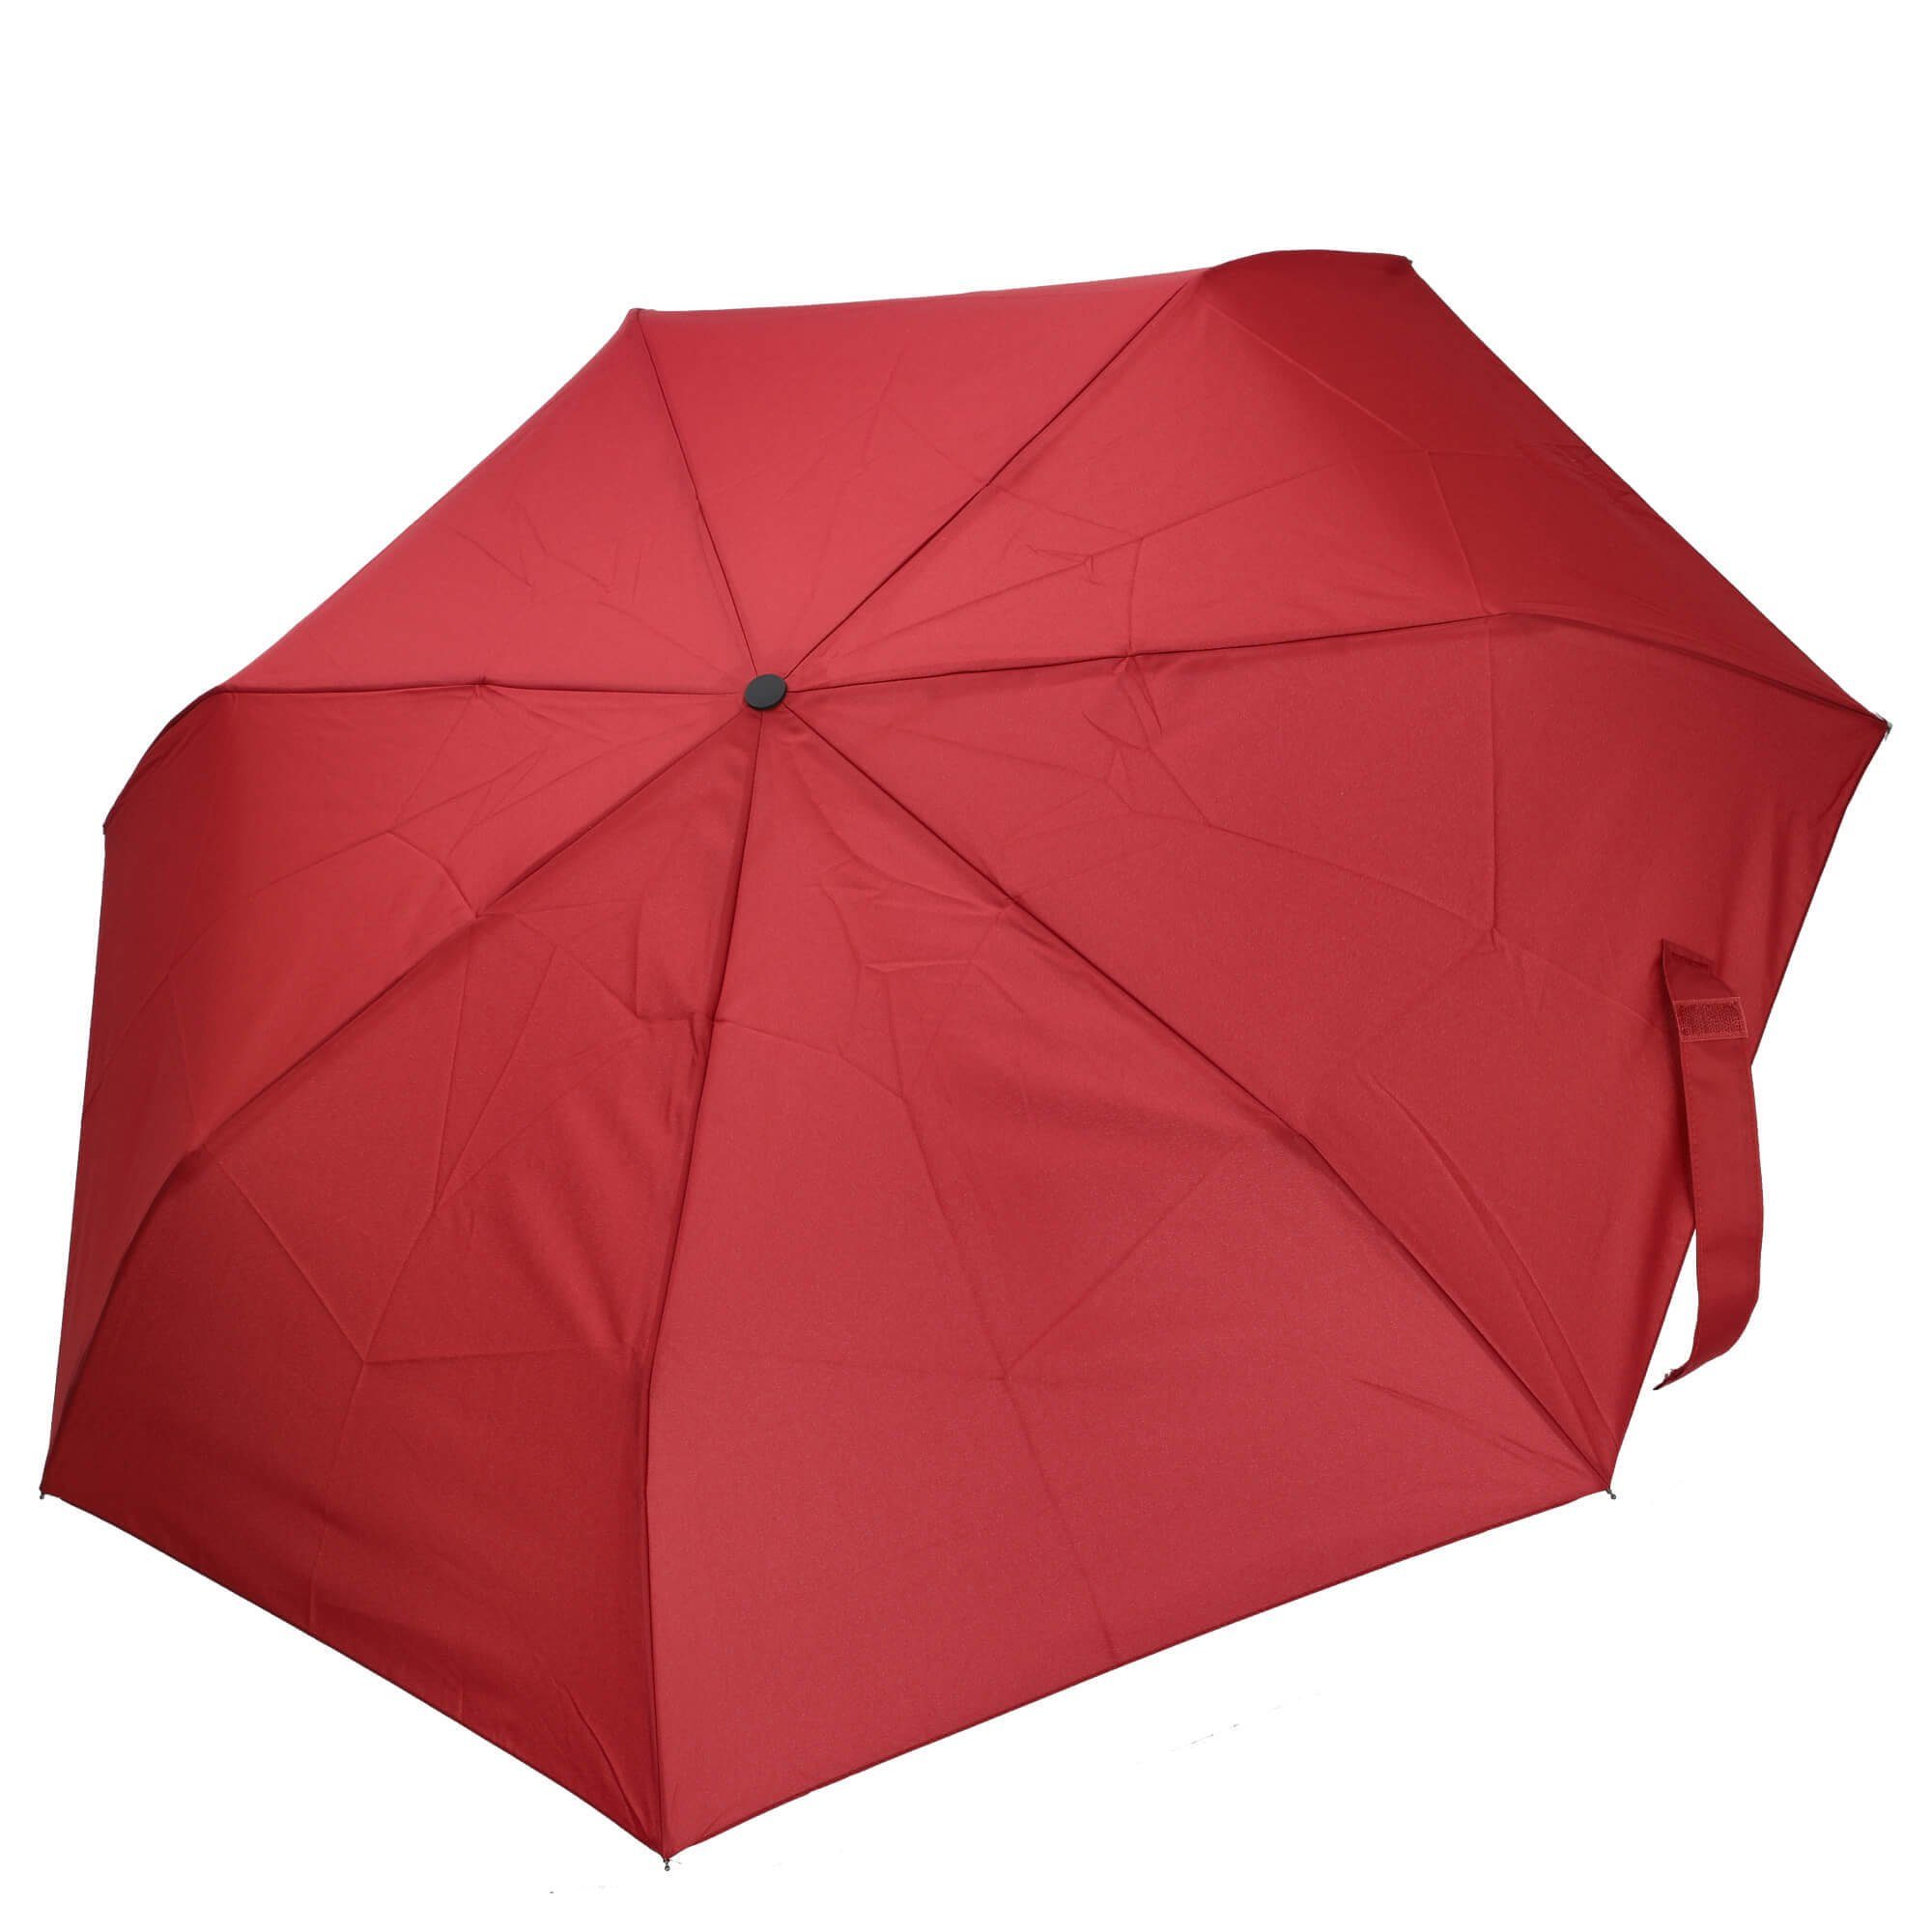 THE BRIDGE Taschenregenschirm Ombrelli - Regenschirm 96 cm rosso | Taschenschirme